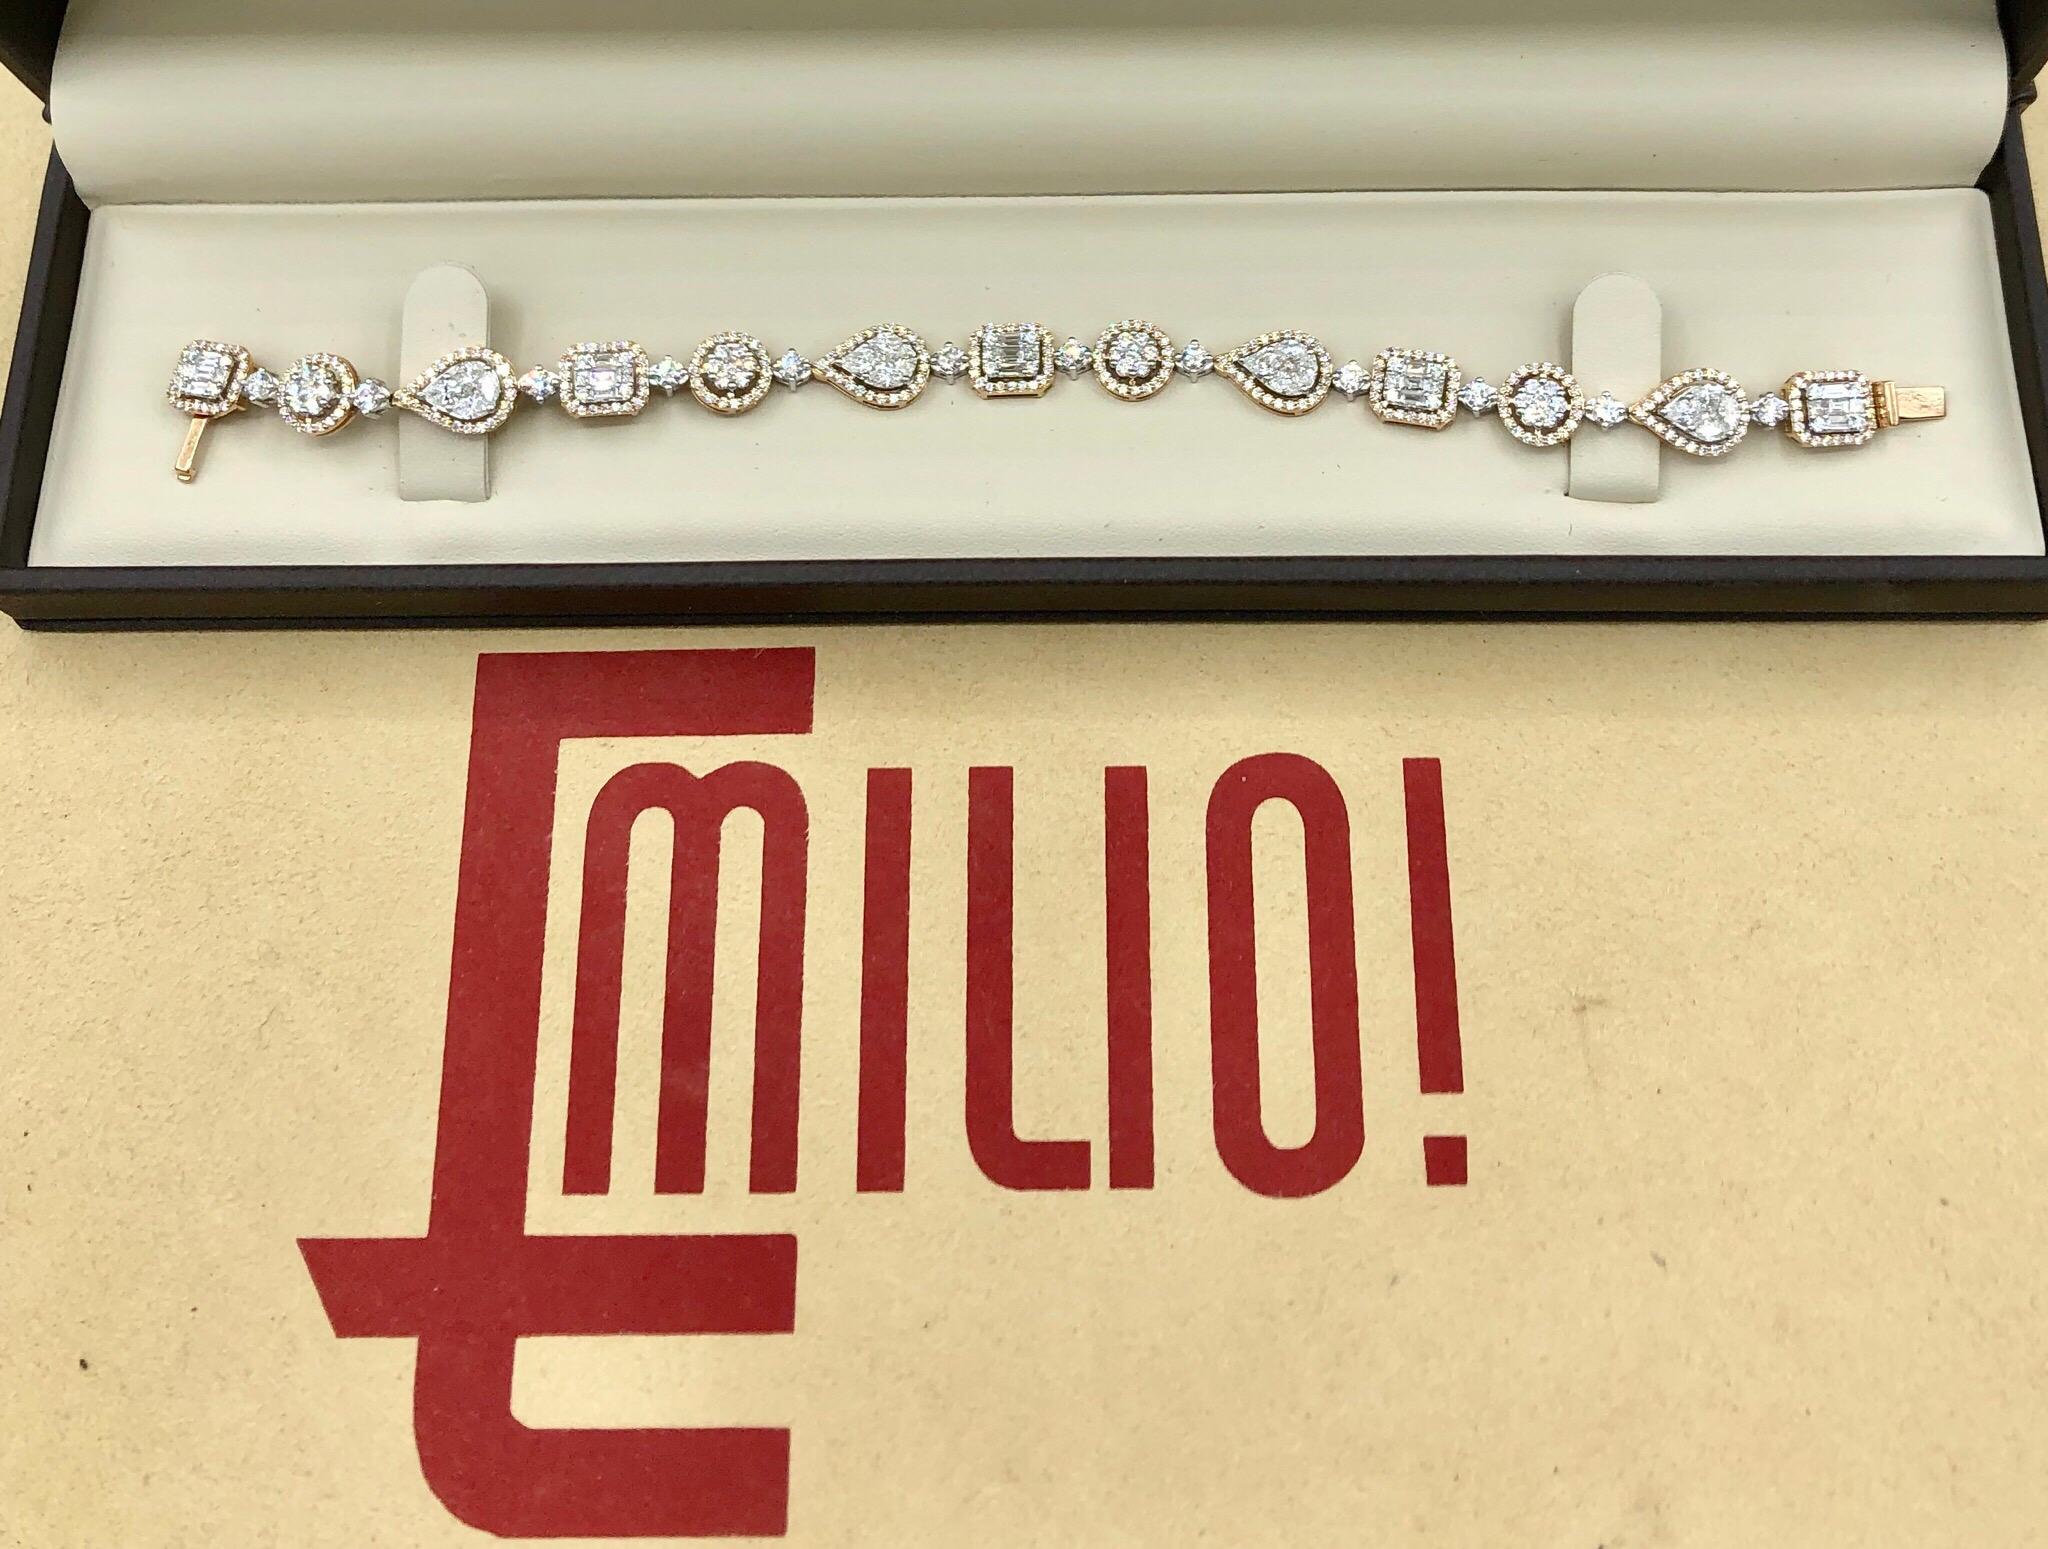 Dieses wunderbare Armband ist auch in 18 Karat Weißgold zu bestellen. Es war gut durchdacht, bevor Emilio es entworfen hat! Handgefertigt in der Emilio-Schmuckfabrik. Hier sind die Einzelheiten
Metall: 18k
Natürliche Diamanten: 5.92 Karat gemischte